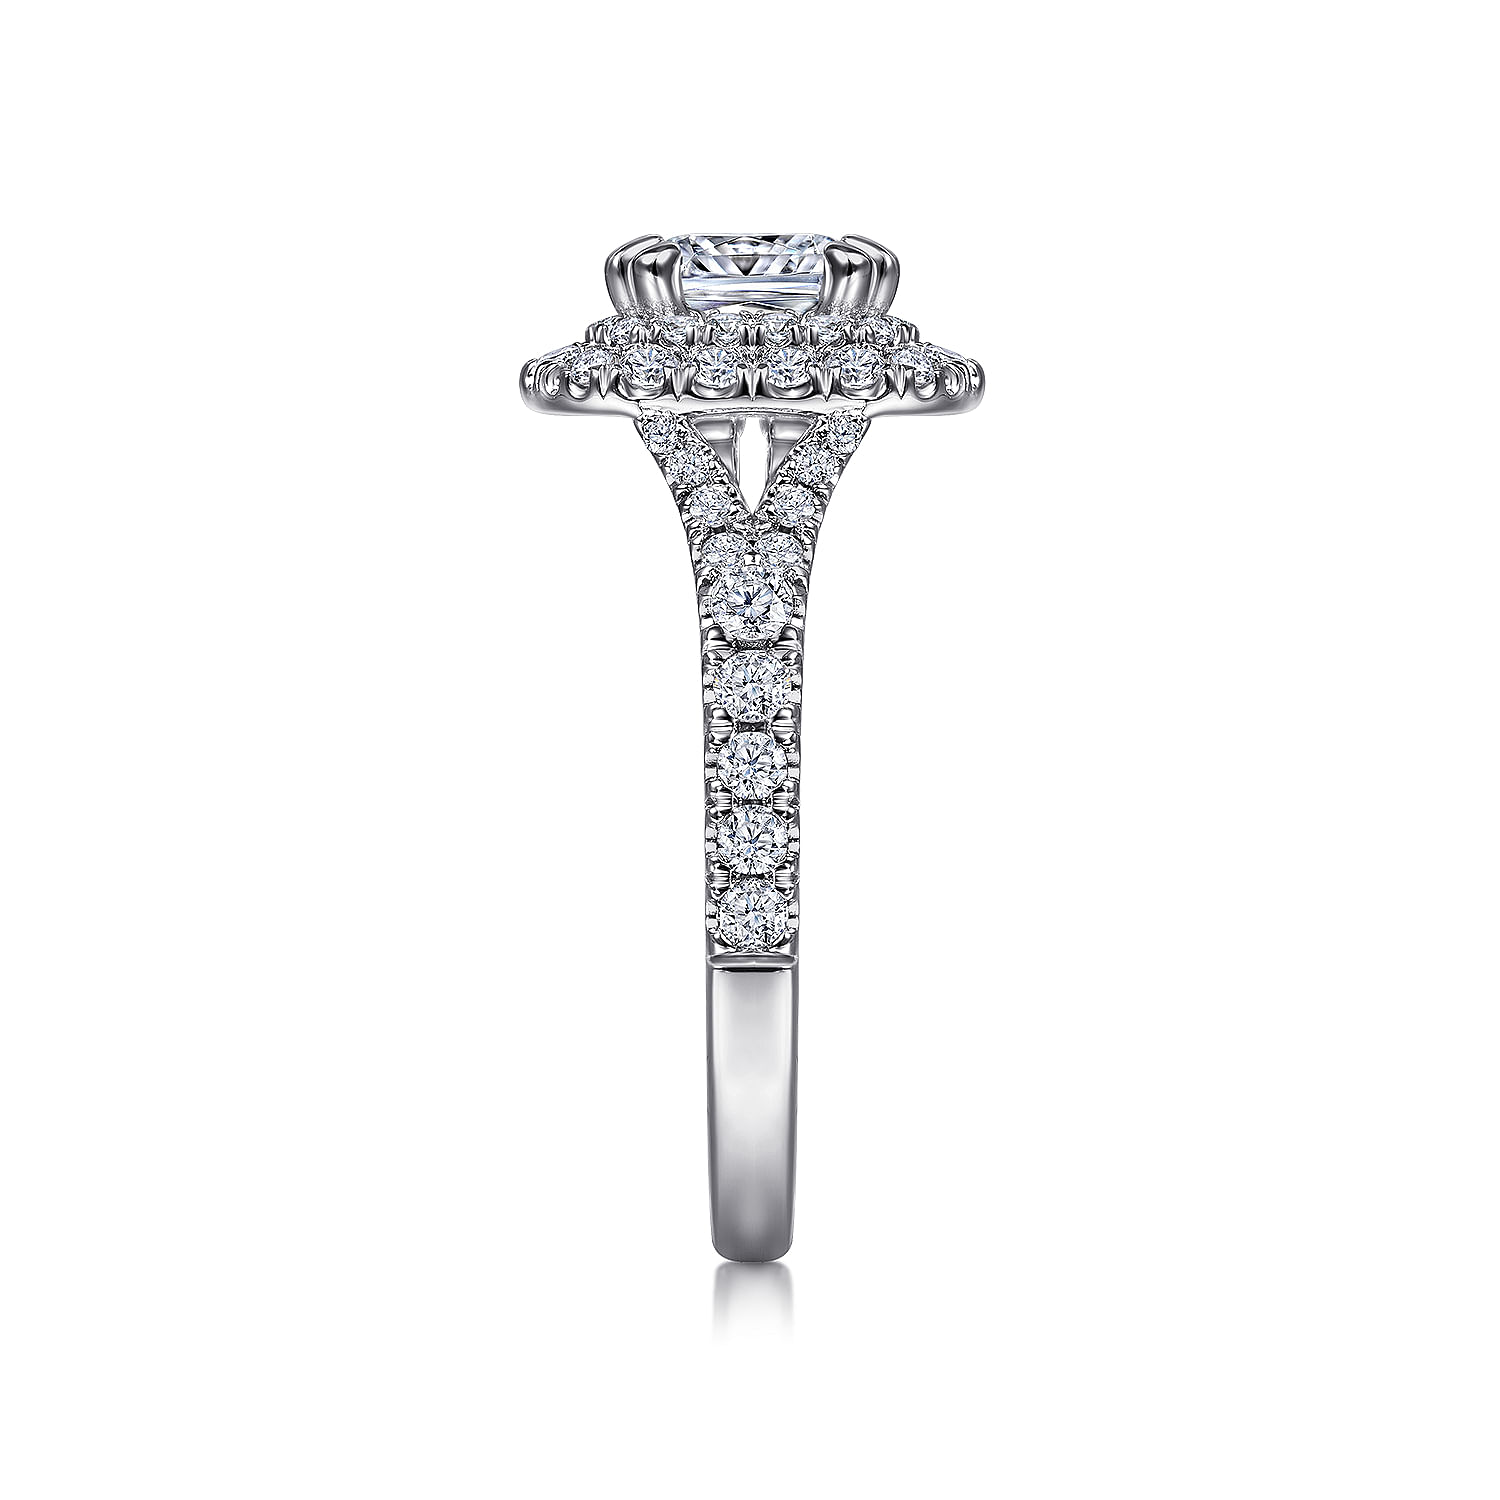 Platinum Cushion Double Halo Diamond Engagement Ring